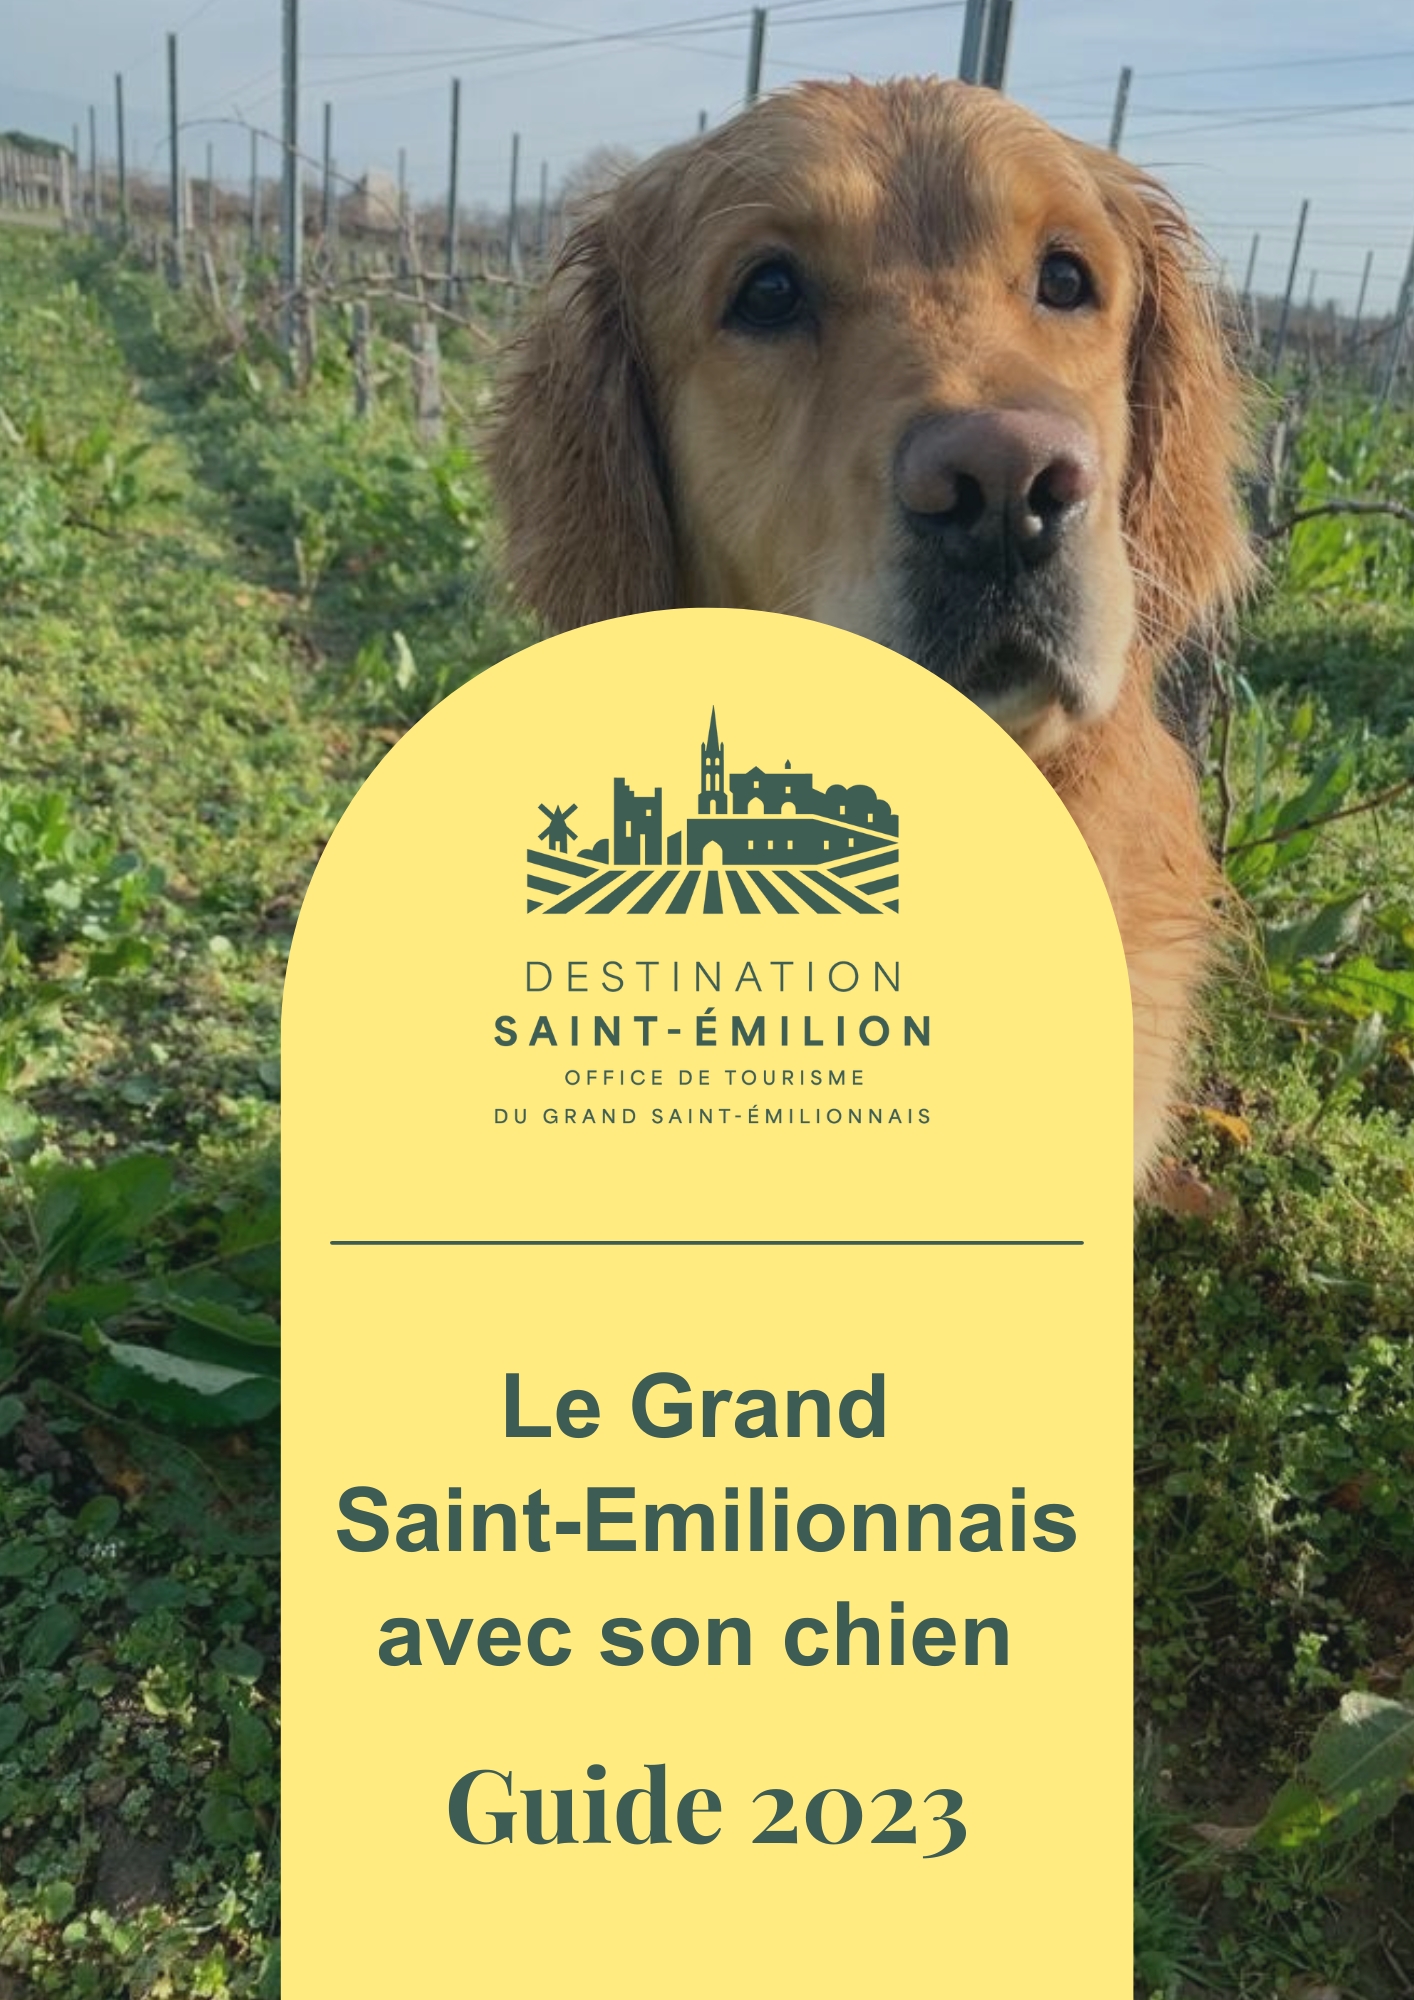 Guide 2023 - Le Grand Saint-Emilionnais avec son chien